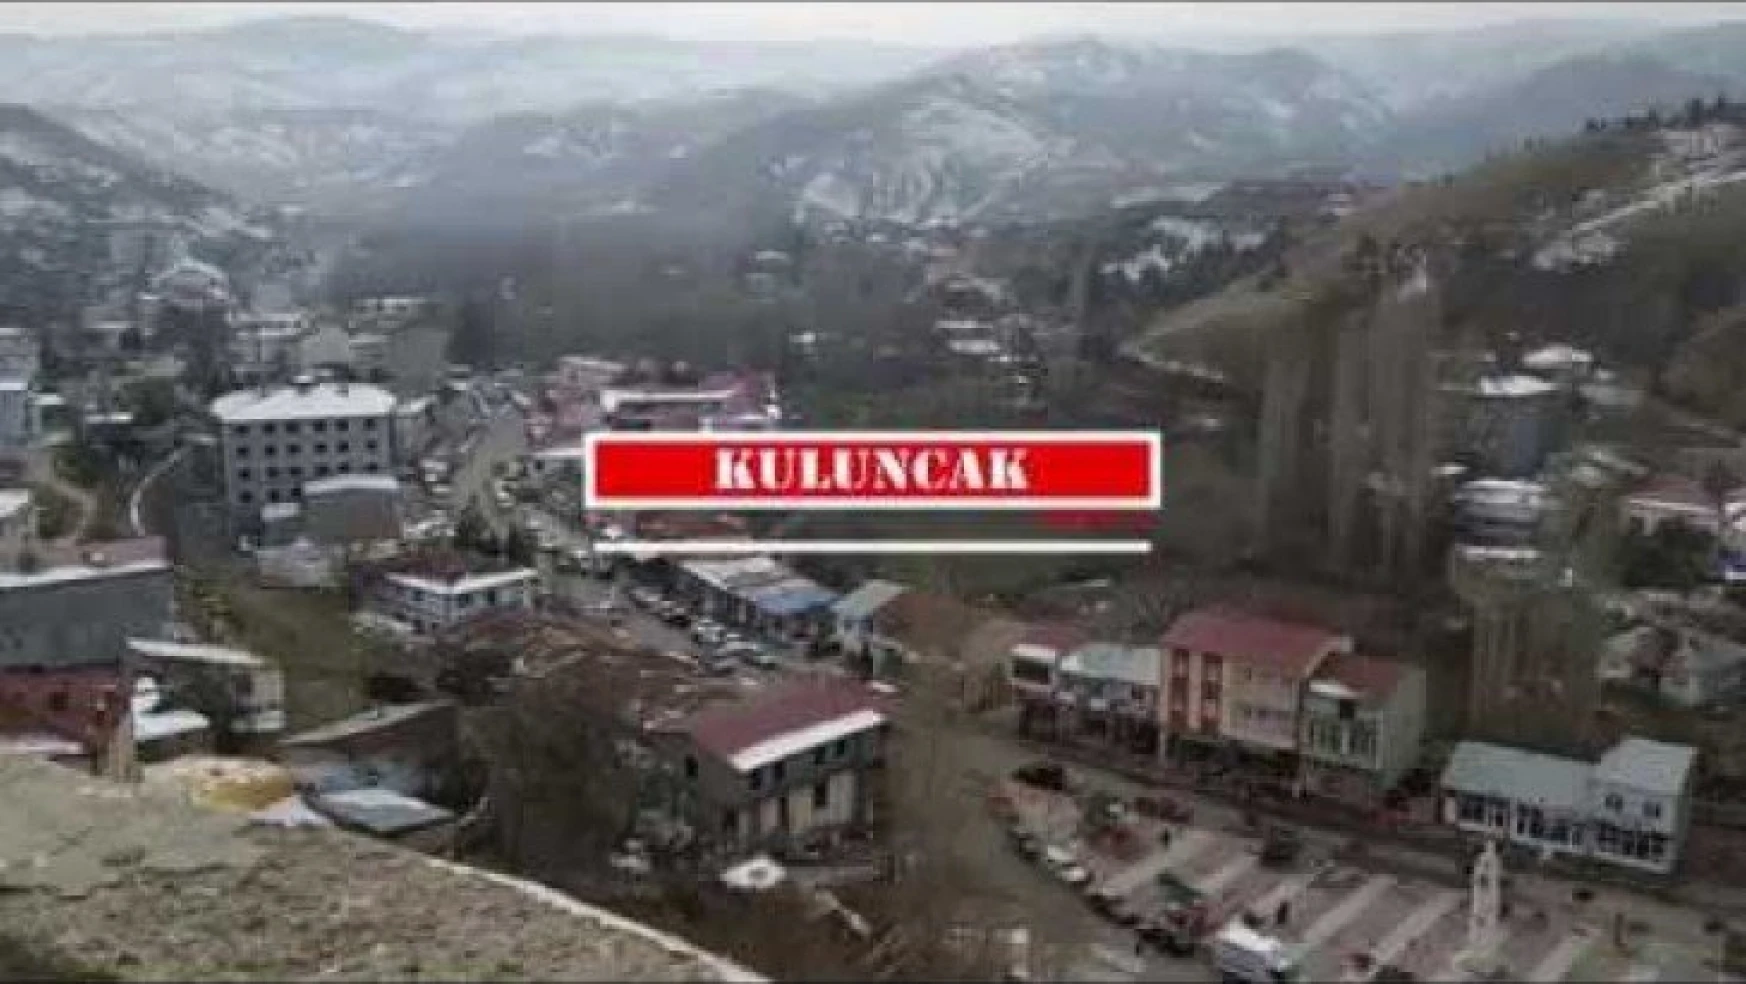 Kuluncak Tillolar köyü karantinaya alındı